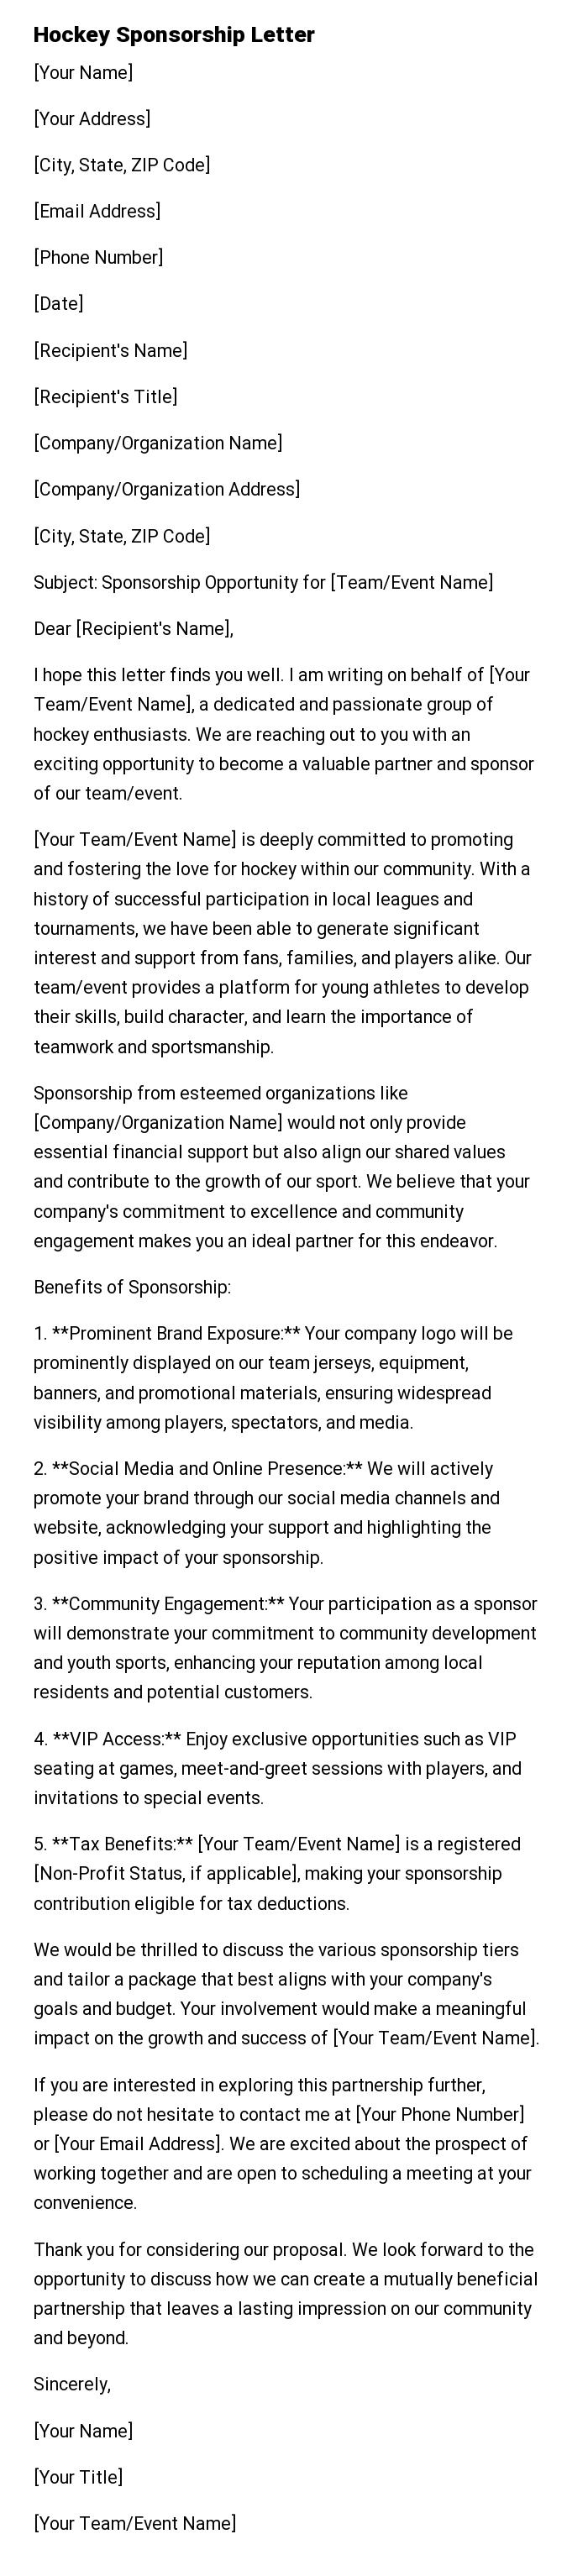 Hockey Sponsorship Letter